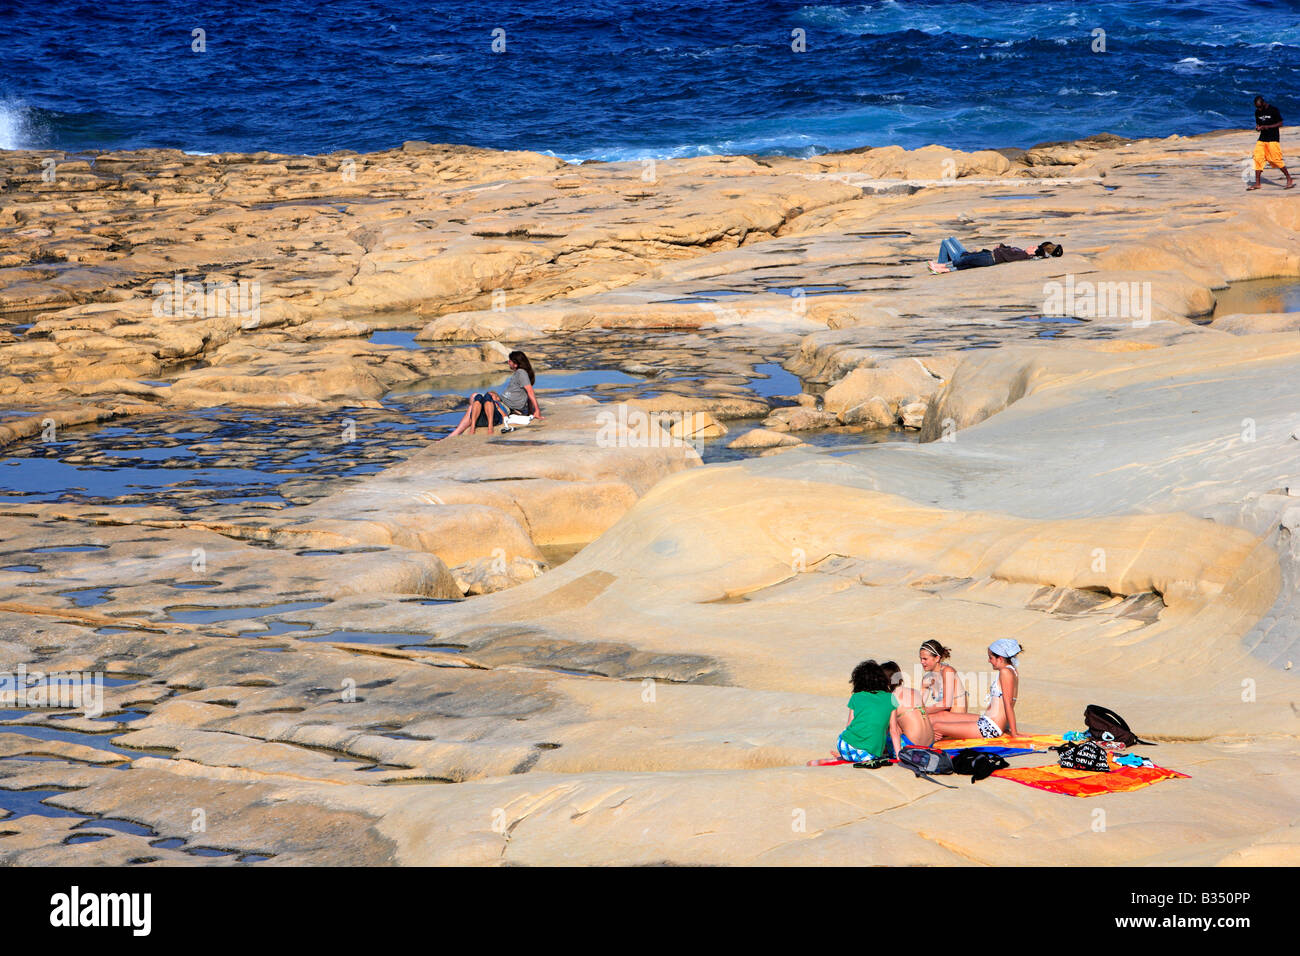 Sunbathing on Sliema beach, Malta Stock Photo